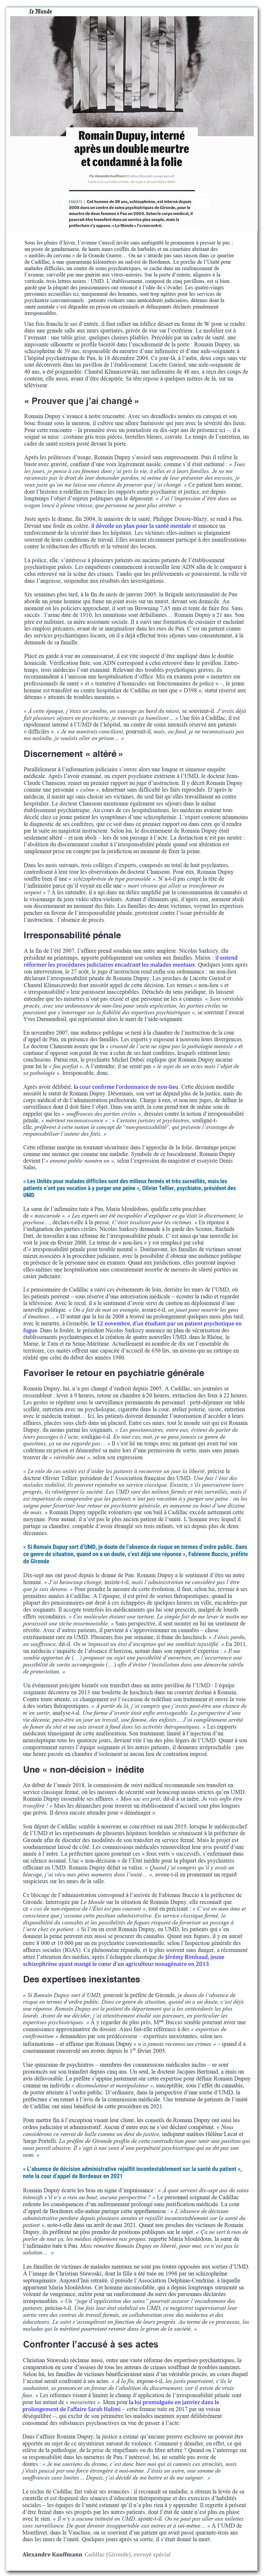 Le Monde : Romain Dupuy ou la « perpétuité psychatrique »